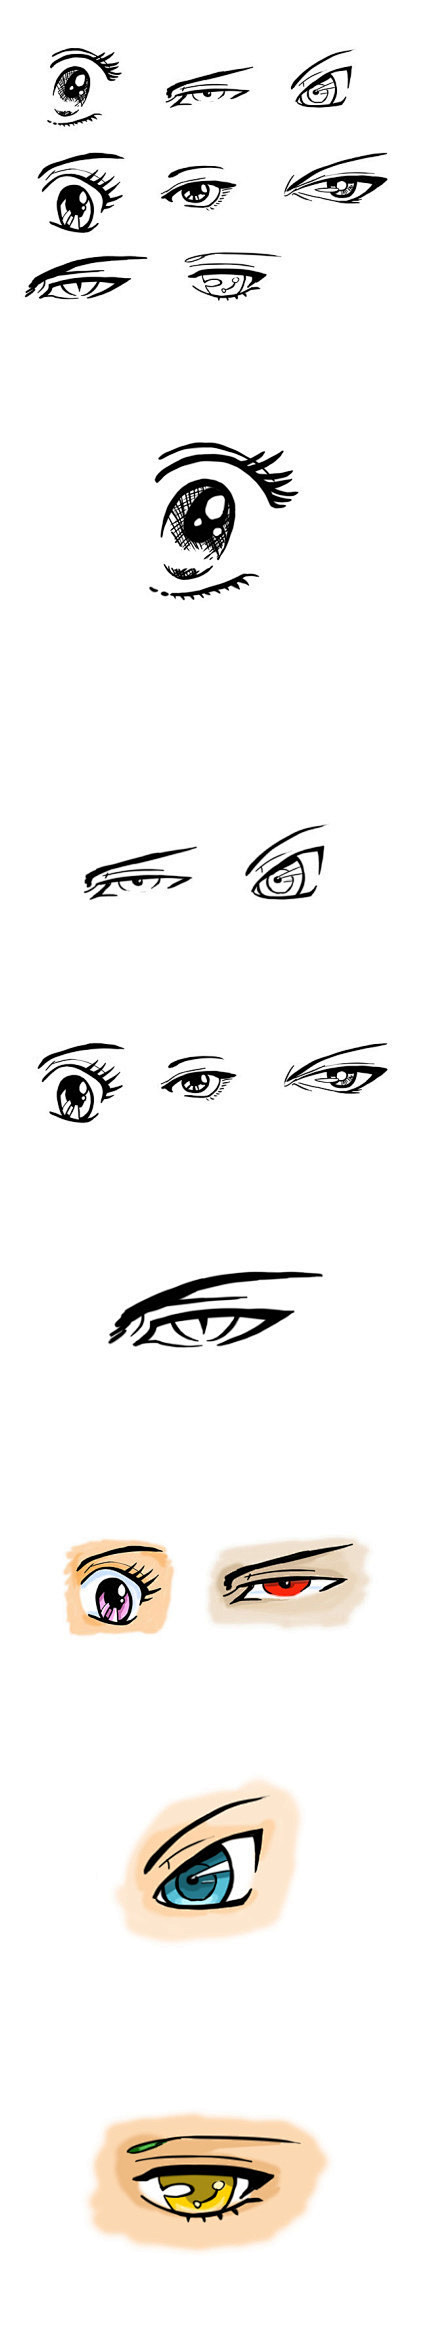 动画形象设计--几种风格的眼神